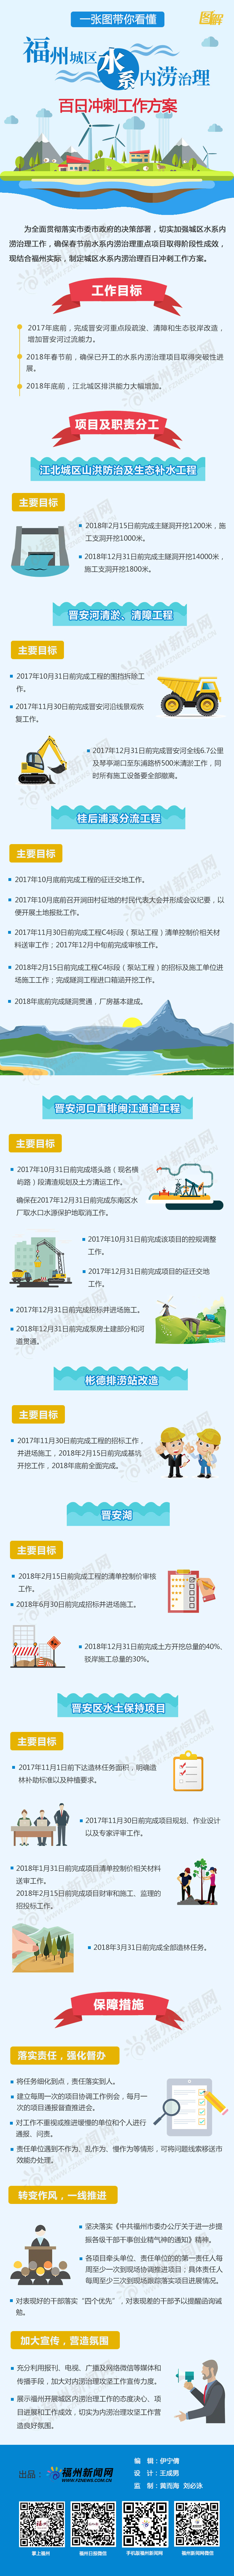 一张图带你看懂福州城区水系内涝治理百日冲刺工作方案